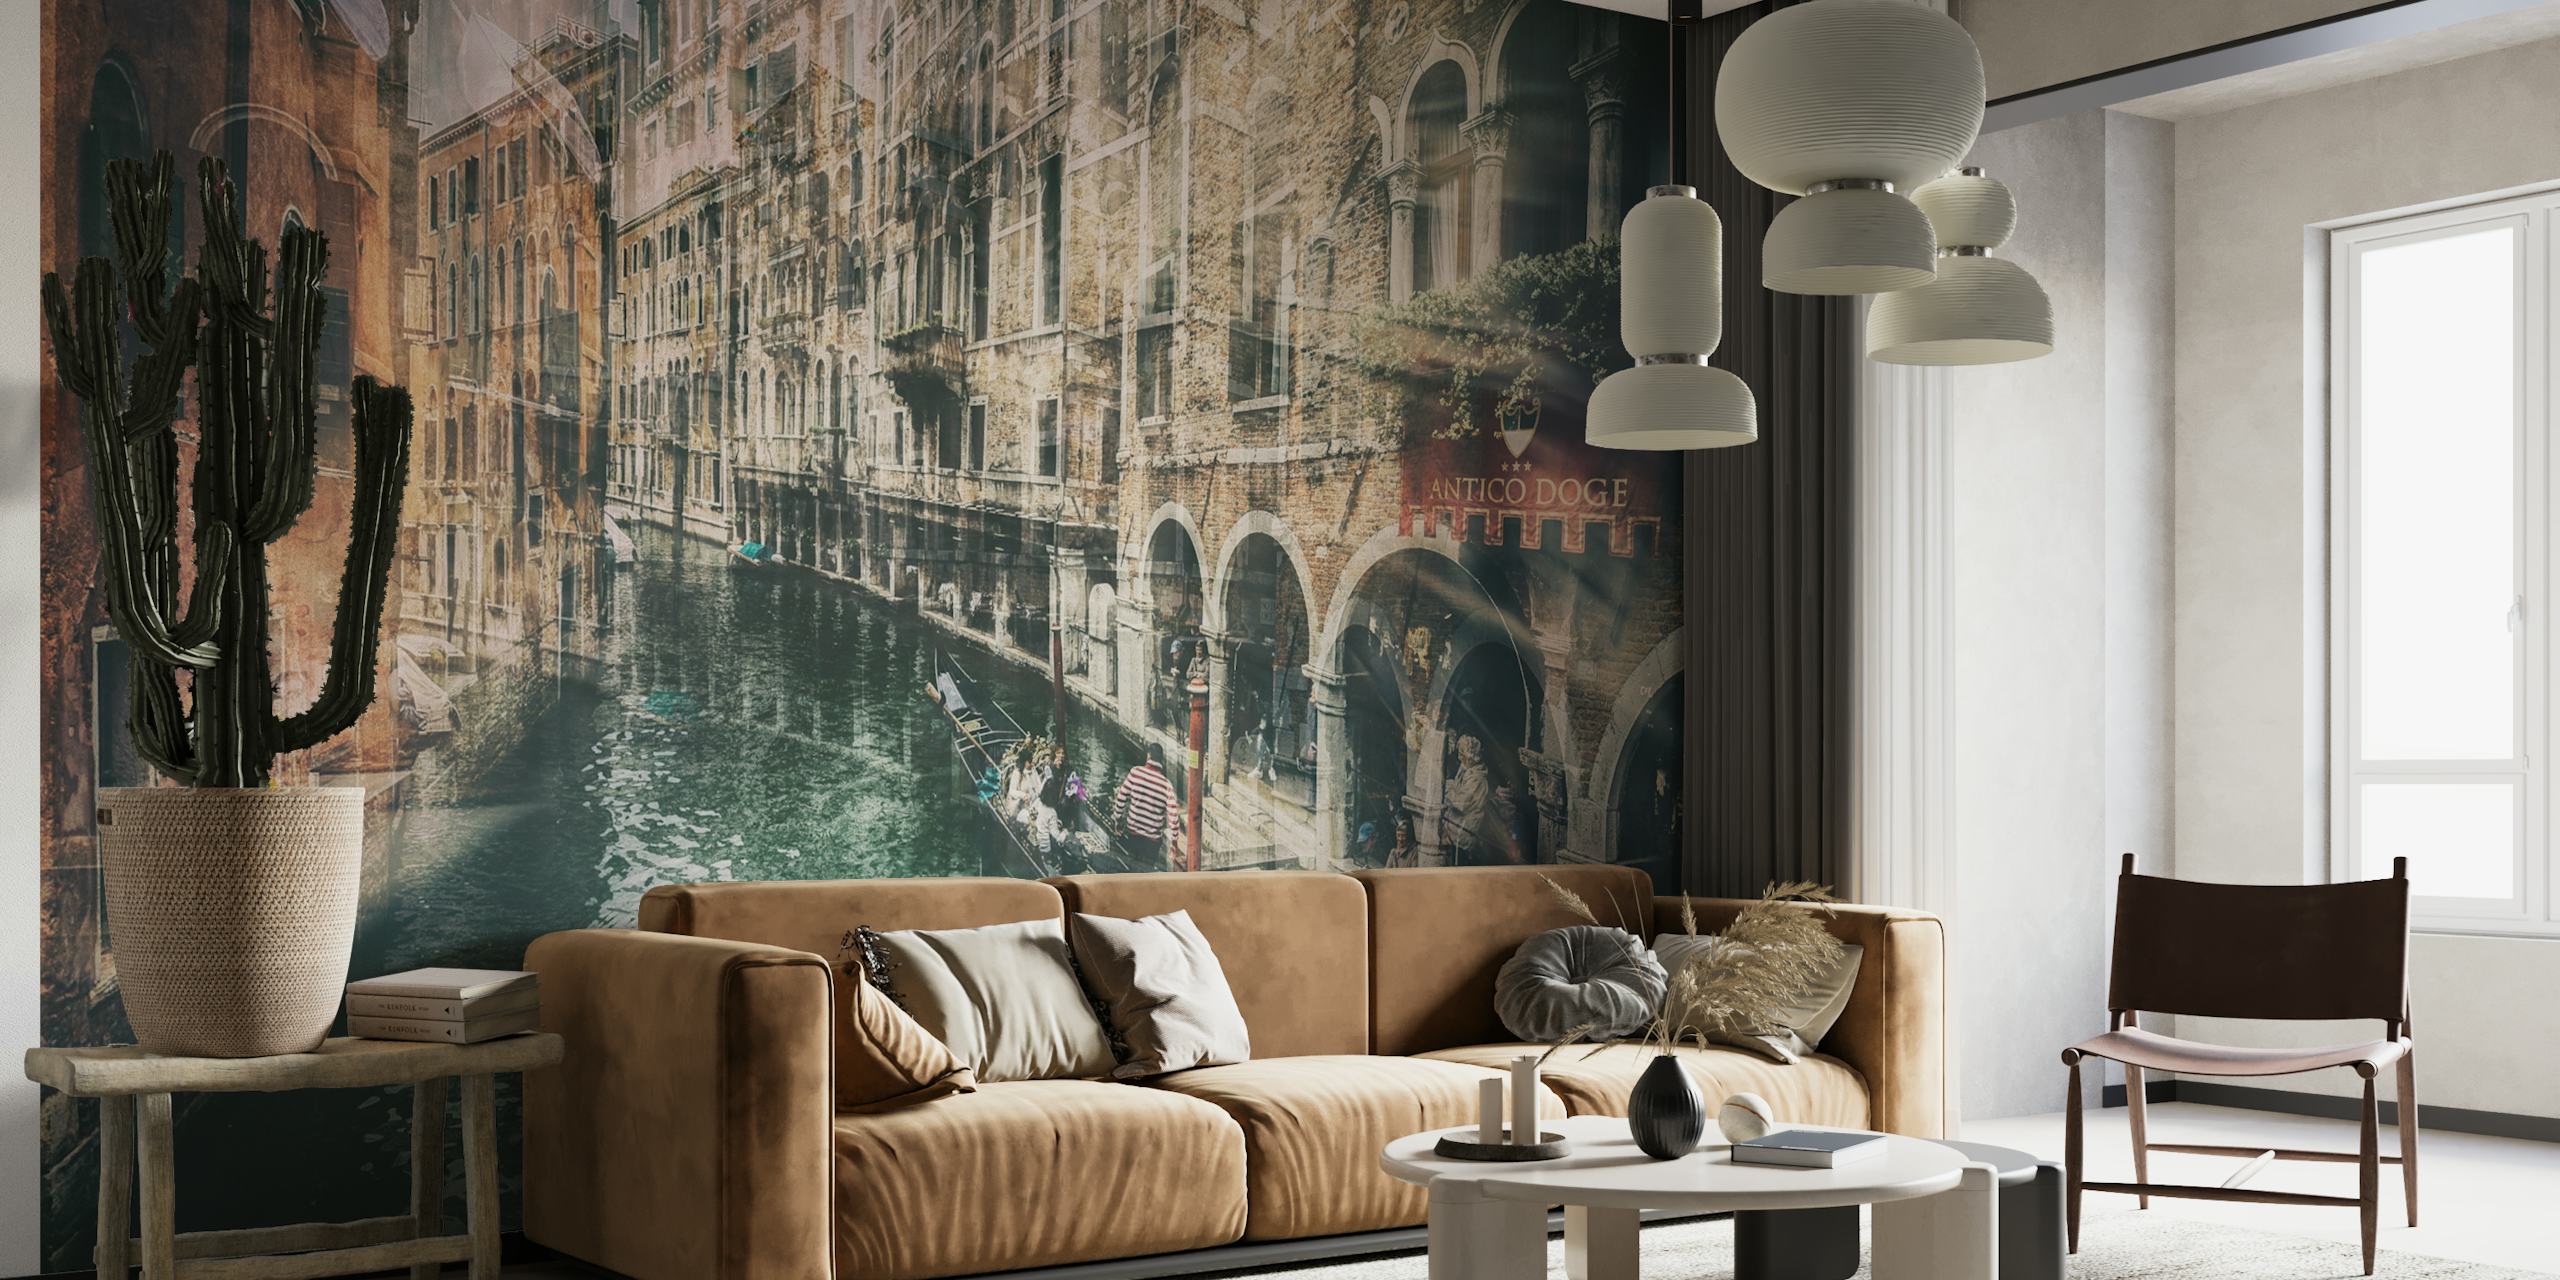 Papier peint de style vintage représentant un canal vénitien à l'architecture historique